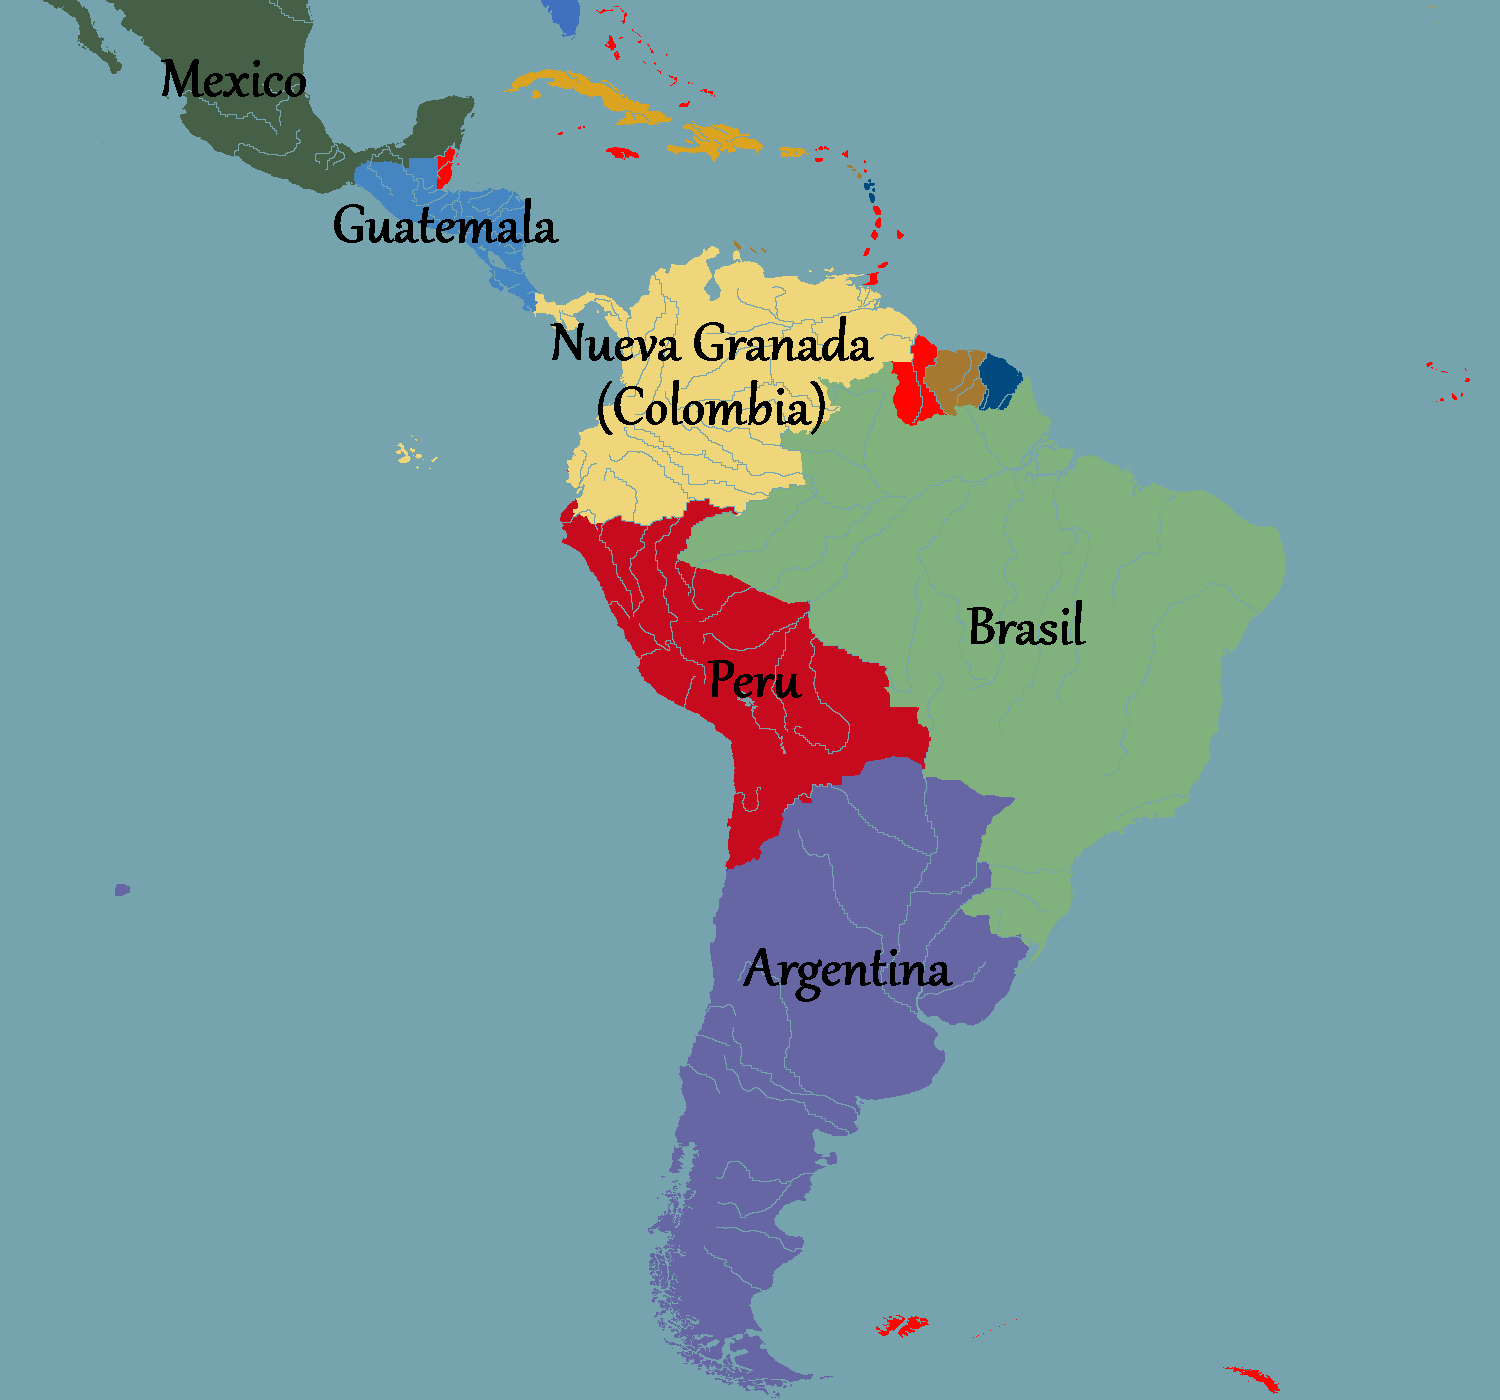 Колонизированные страны америки. Колонии Испании в Латинской Америке. Карта испанских колоний в Южной Америке. Карта испанских колоний в Латинской Америке. Колонии Испании в 19 веке в Латинской Америке.